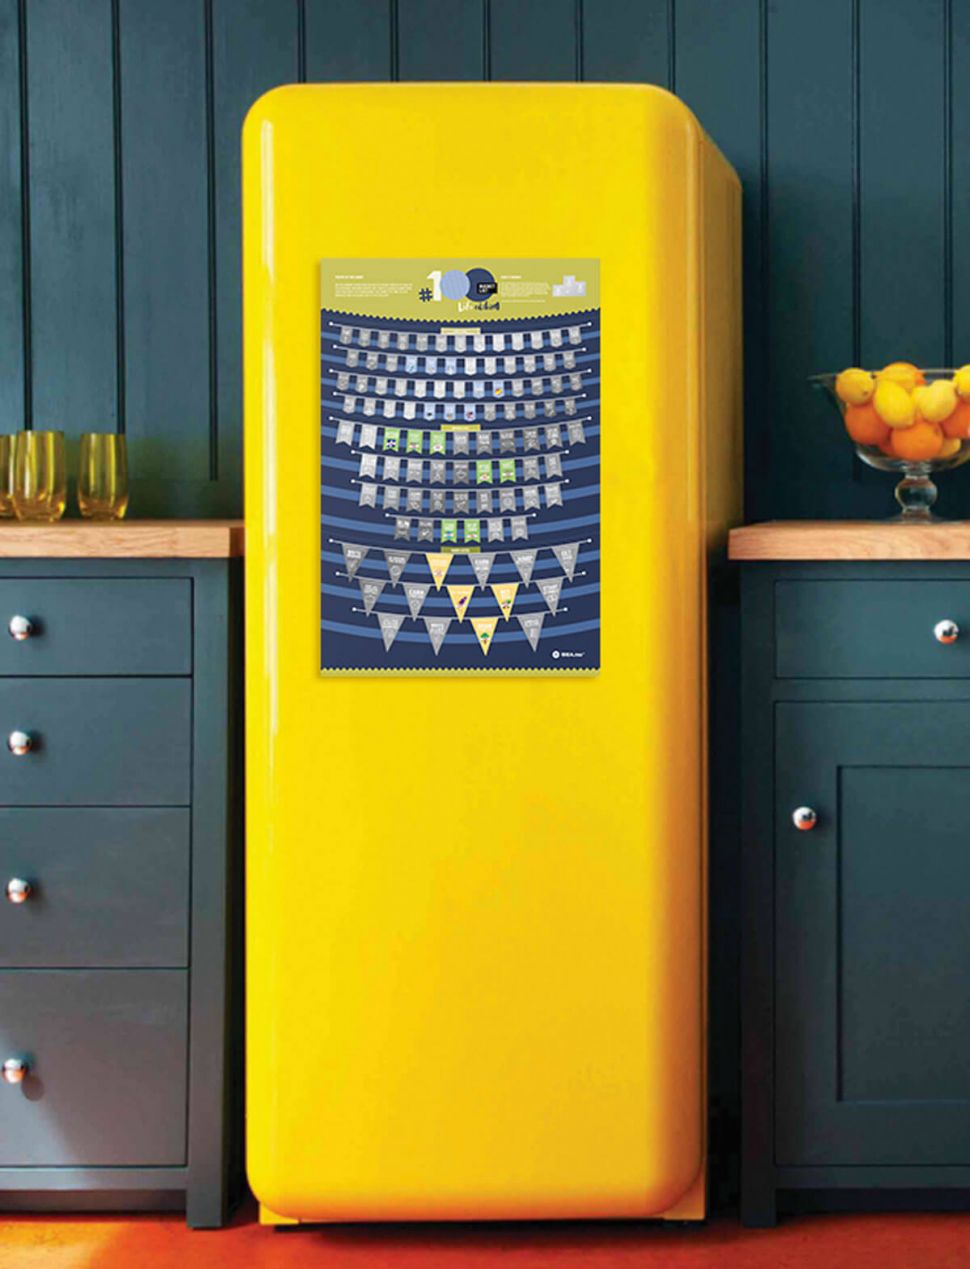 Plakat zdrapka #100 Bucketlist Life Edition wiszący na żółtej lodówce